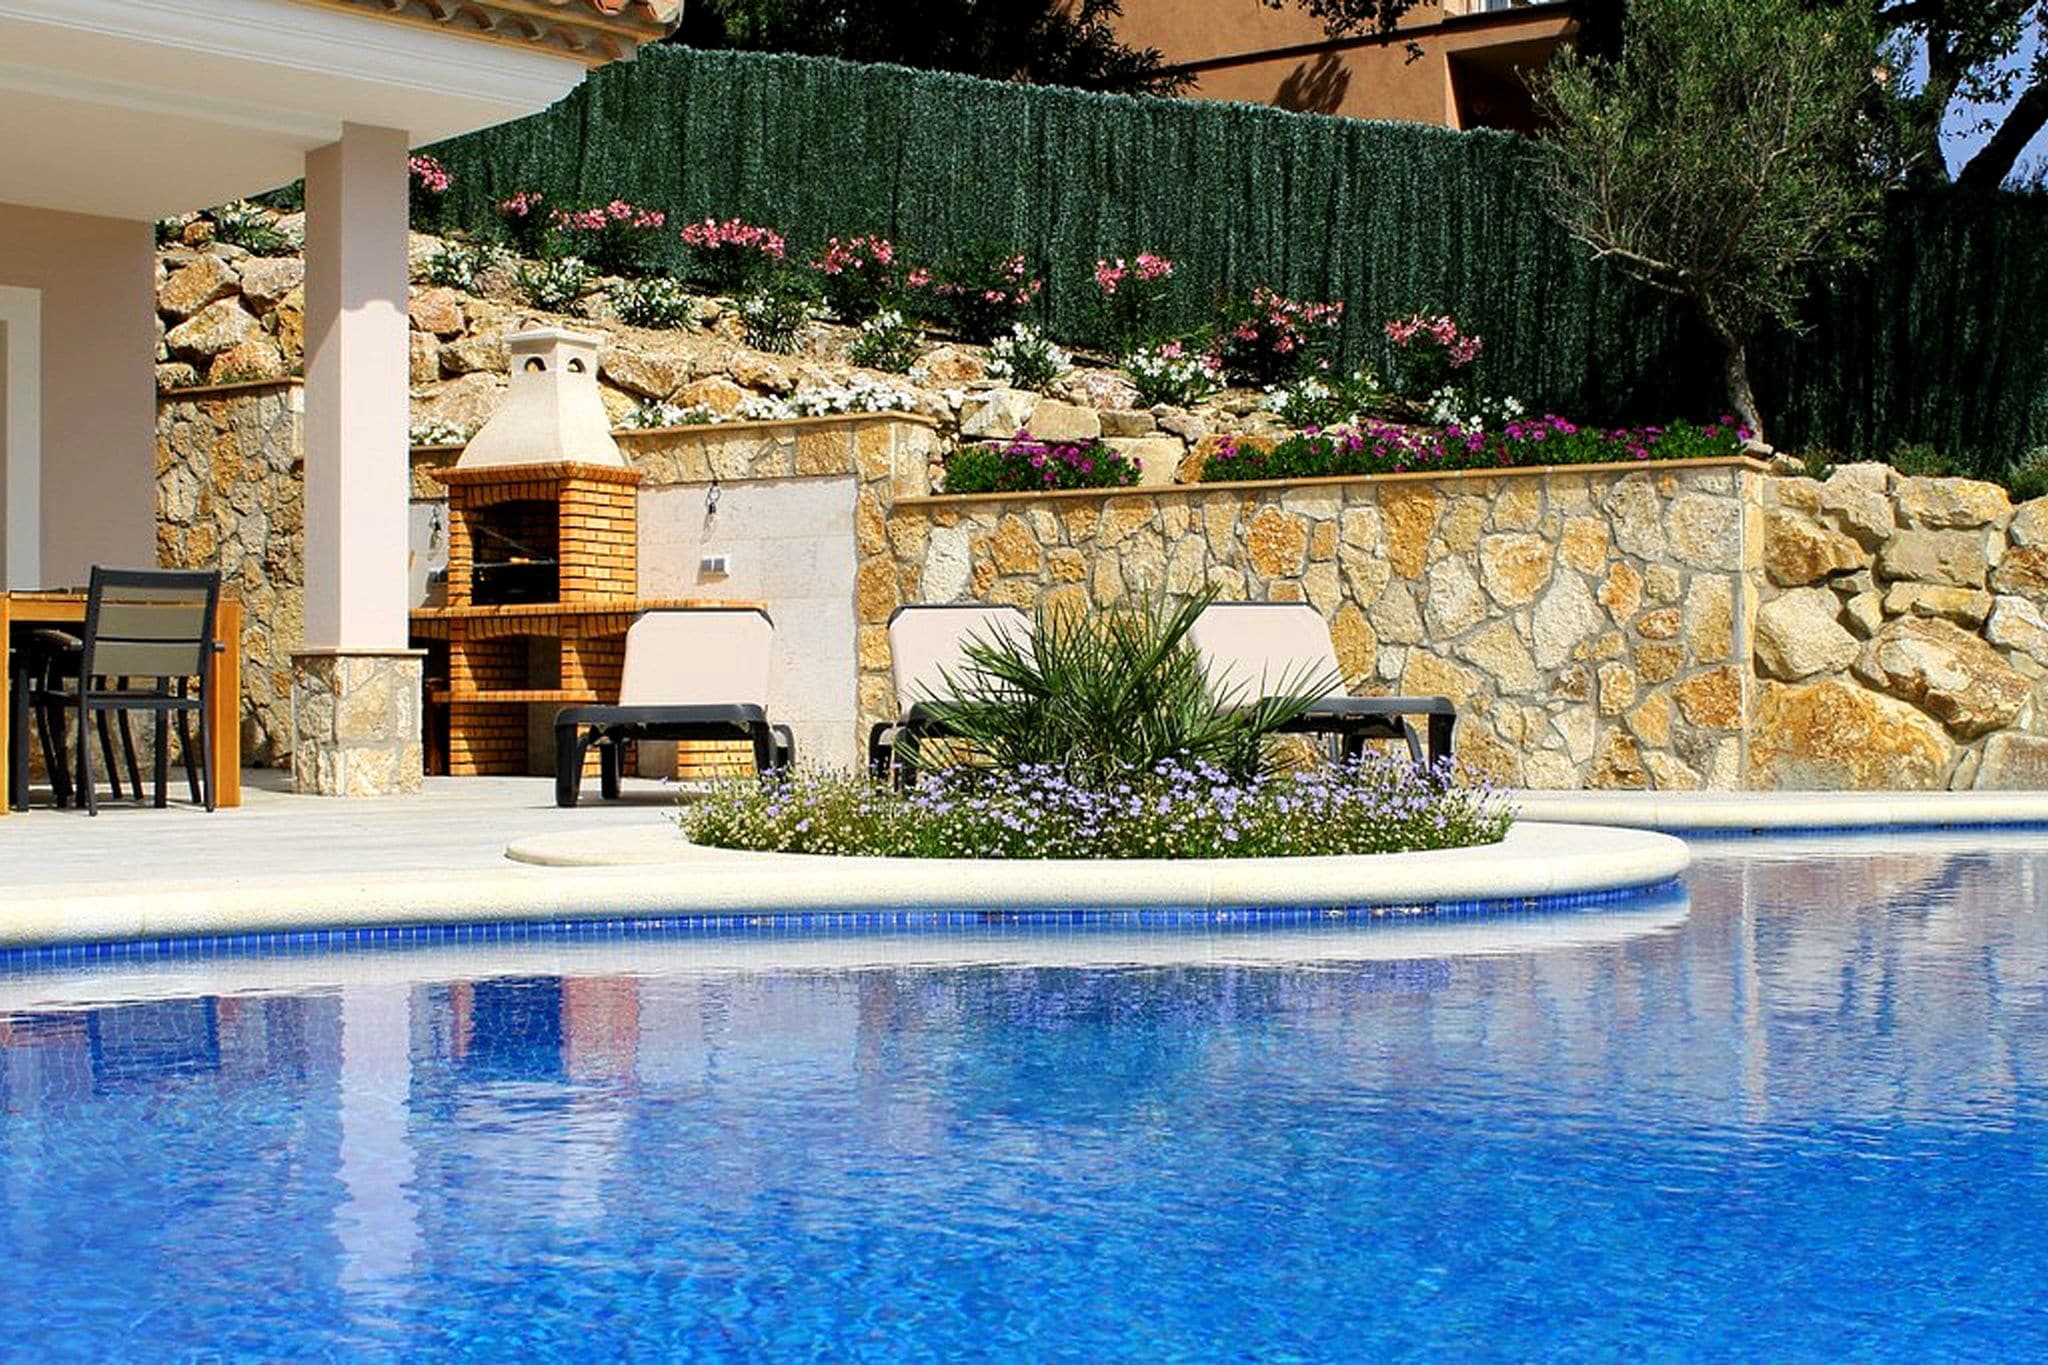 Prachtige villa met fantastisch uitzicht en infinity pool nabij Santa Cristina